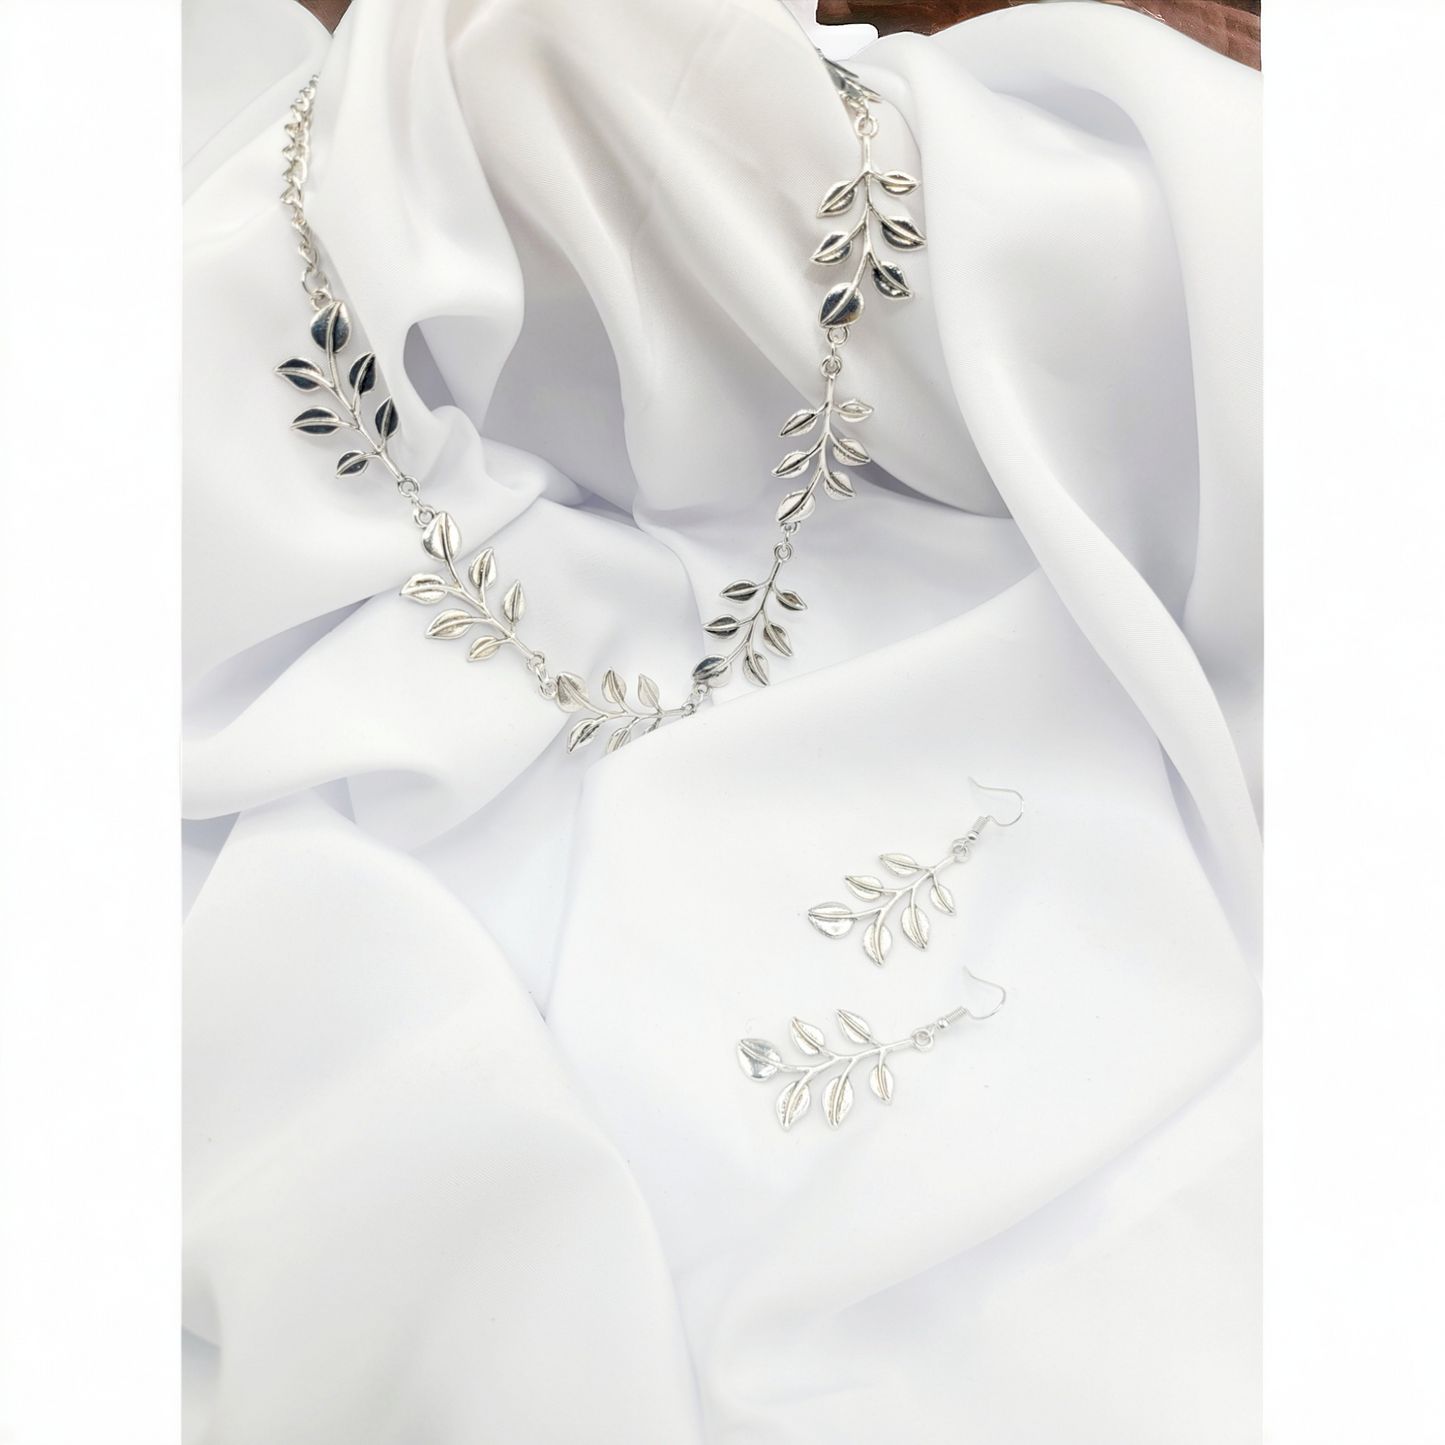 Silver Vine's necklace set